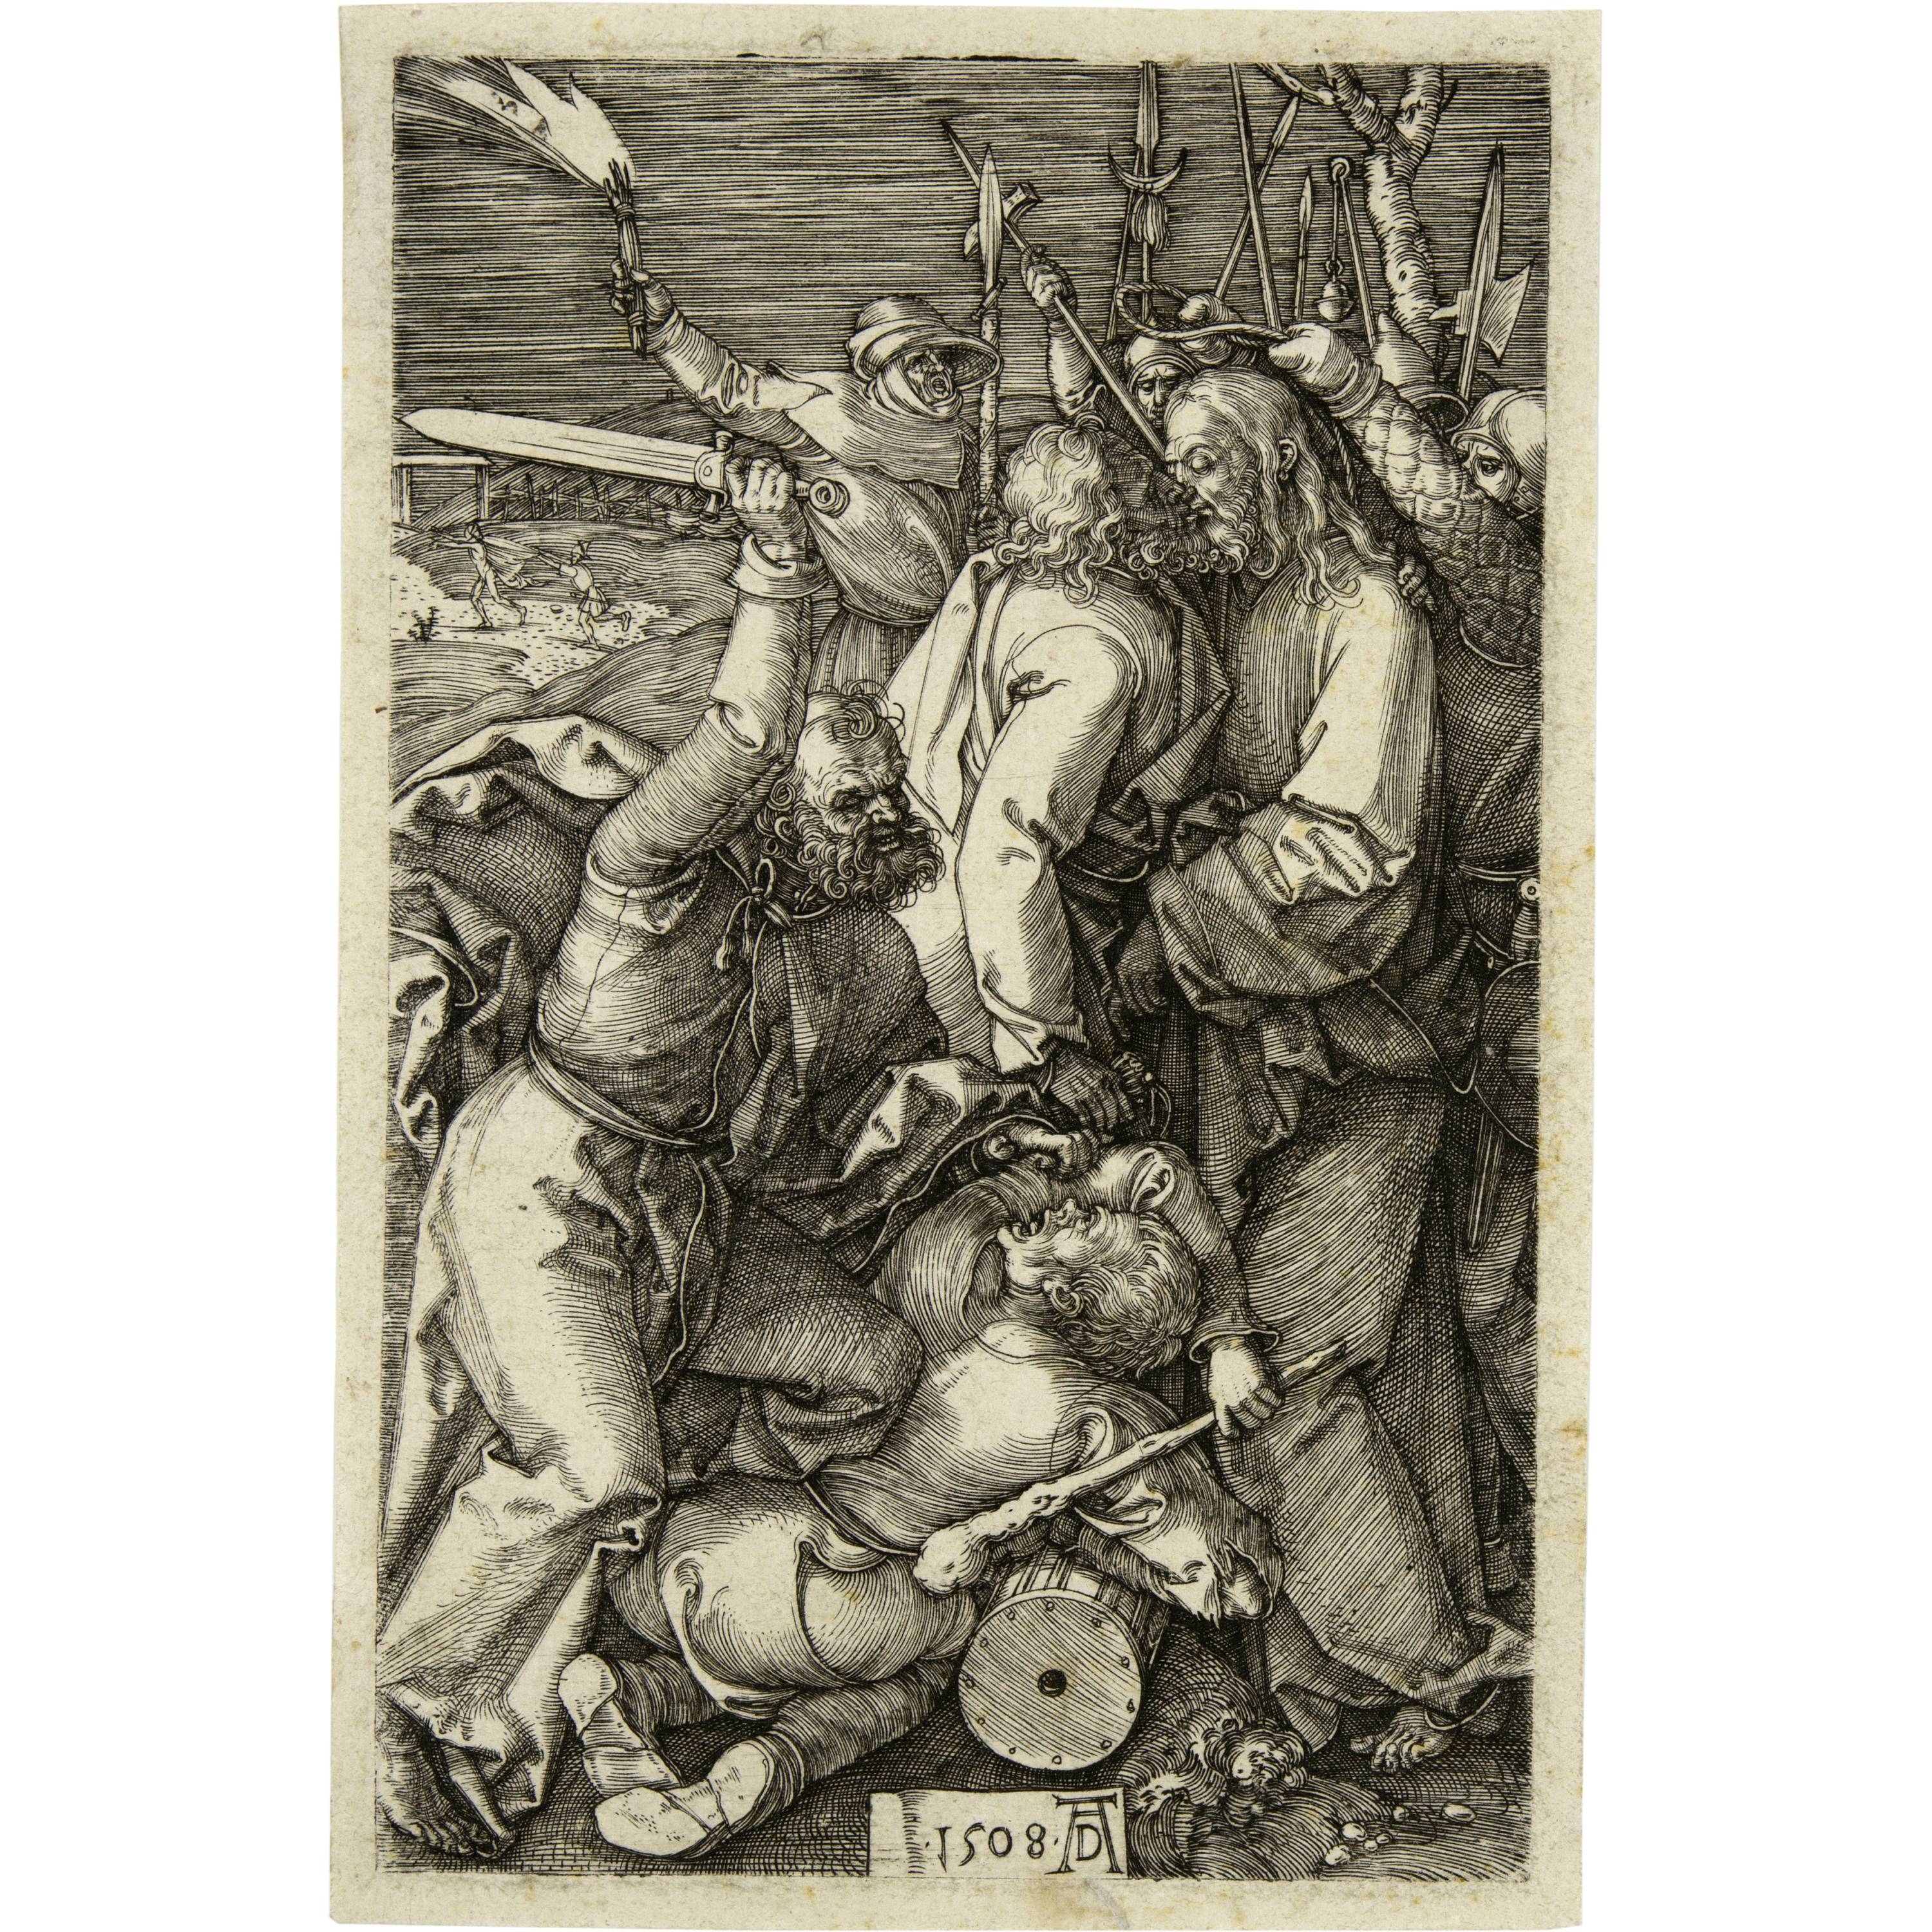 Die Gefangennahme Christi by Albrecht Dürer, 1508